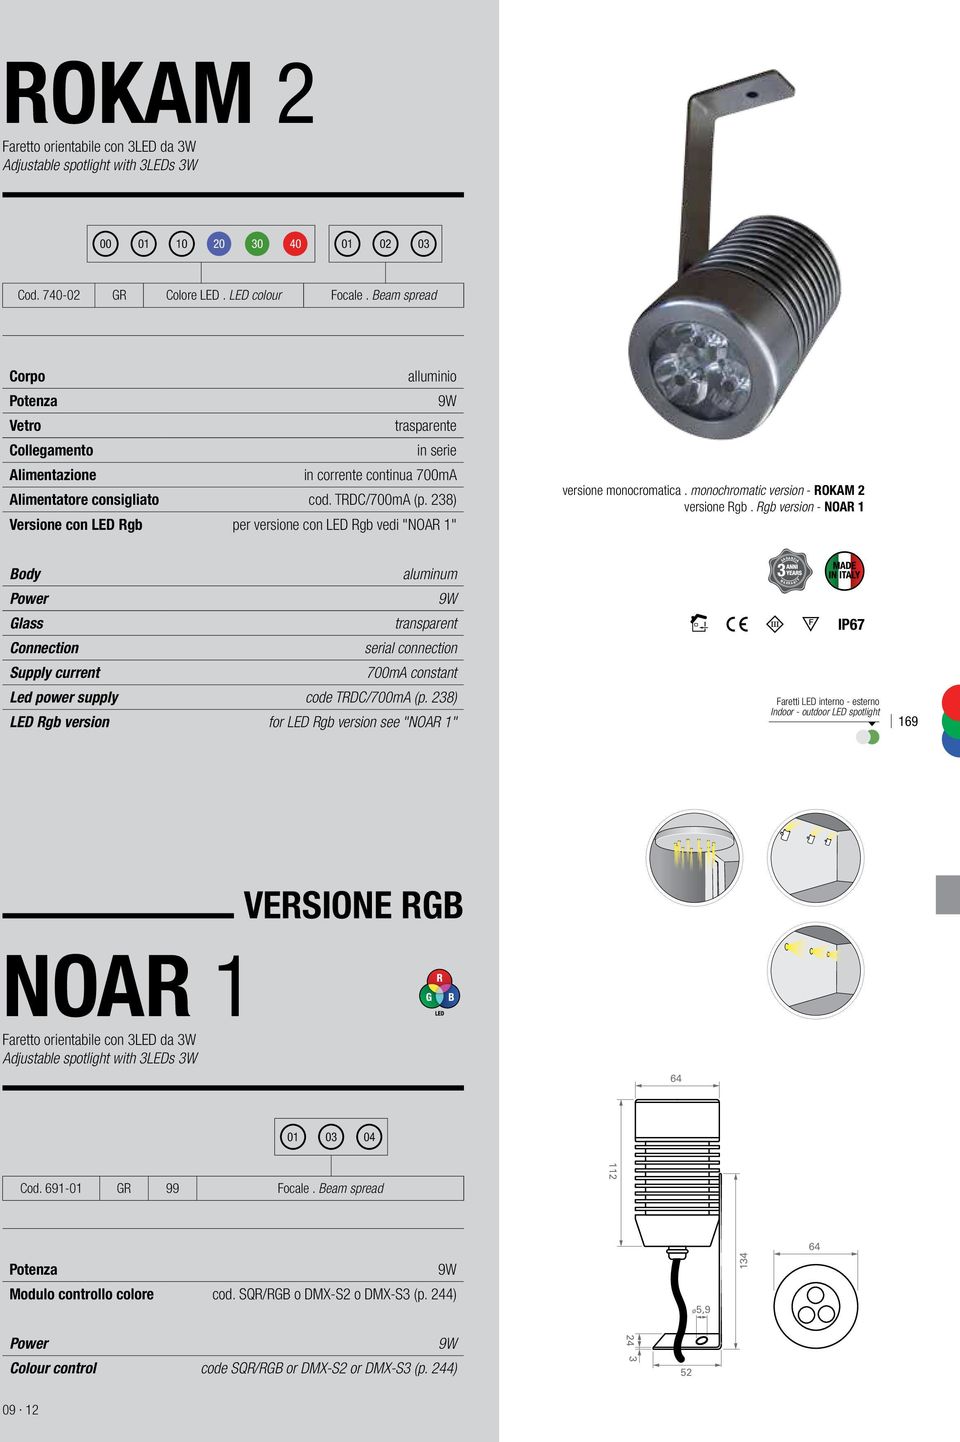 238) Versione con LED Rgb per versione con LED Rgb vedi "NOAR 1" versione monocromatica. monochromatic version - ROKAM 2 versione Rgb.